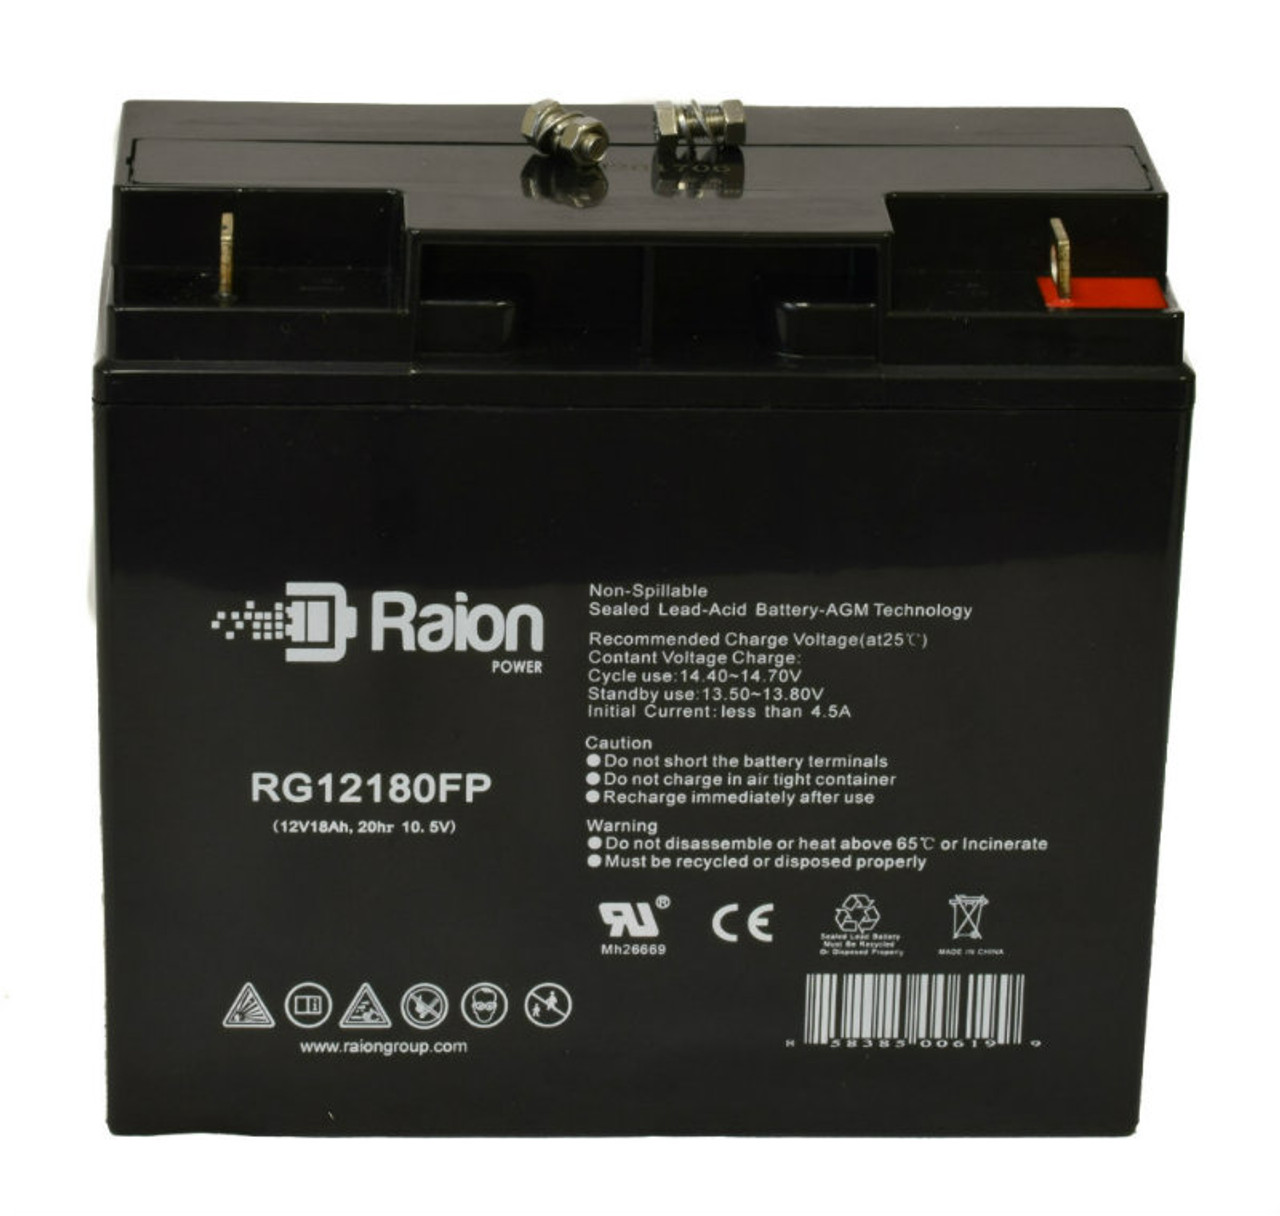 Raion Power RG12180FP 12V 18Ah Lead Acid Battery for Ecolo ET-4-Classic